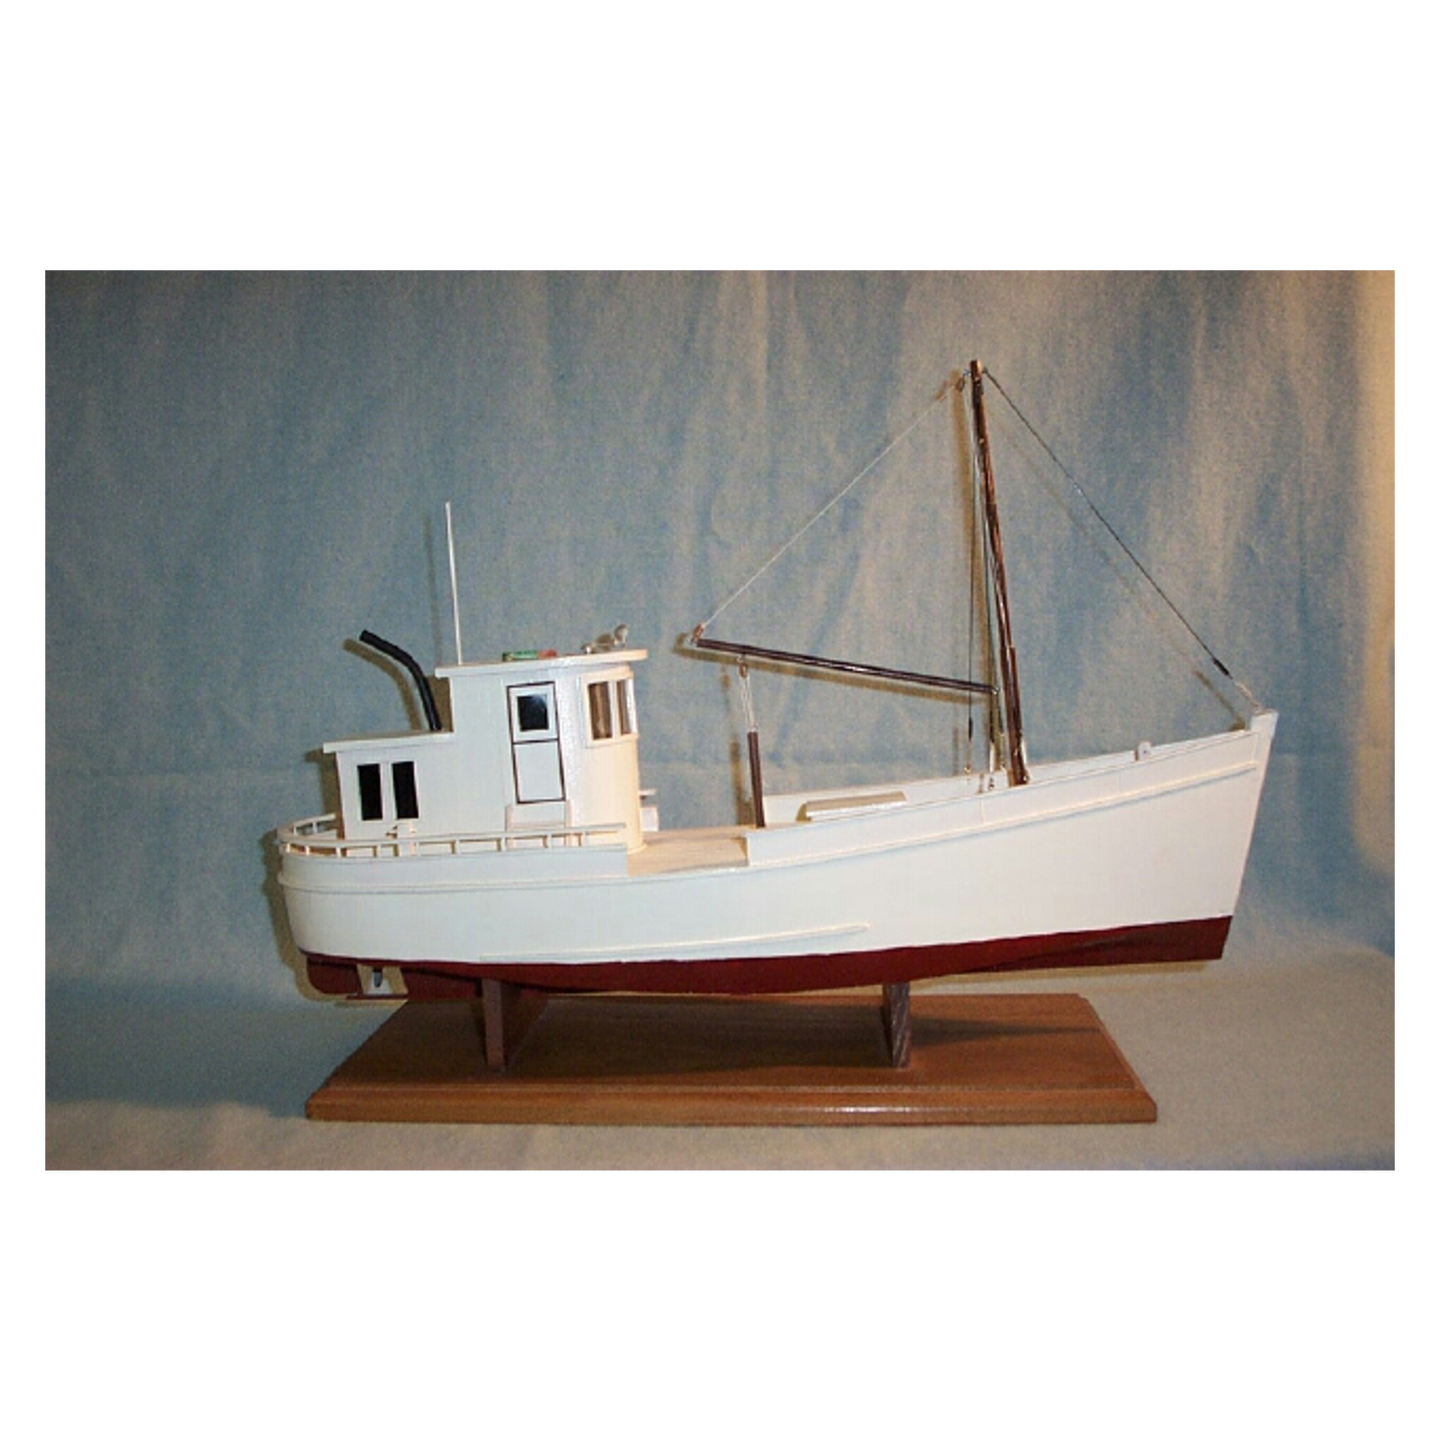 Buy Chesapeake Bay Buy Boat Model Ship Kit – Adama Model Ships